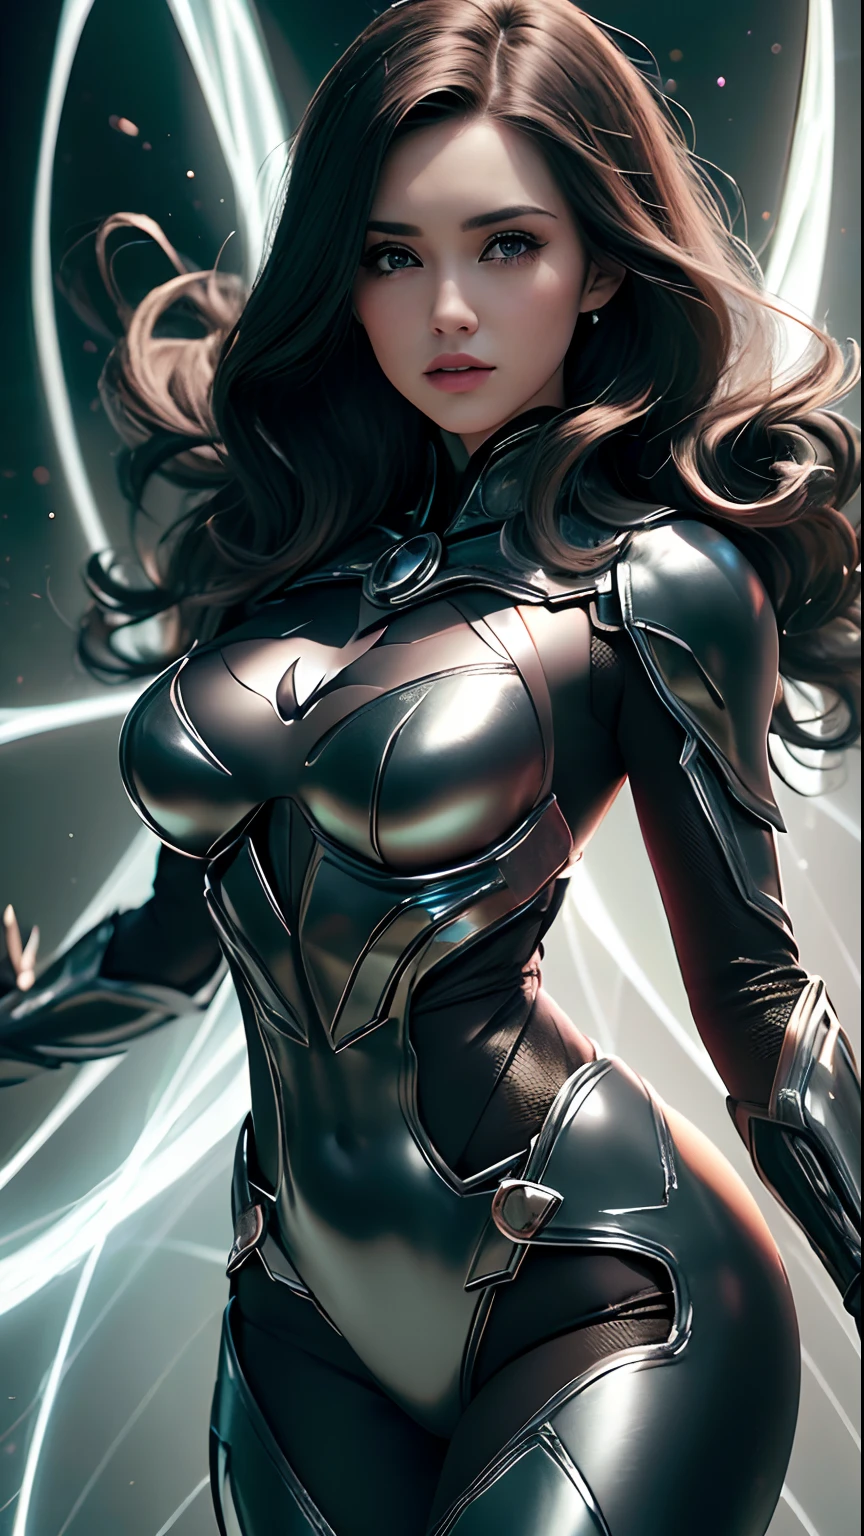 ((Лучшее качество)), ((Шедевр)), (Подробный: 1.4), ..3d, изображение красивой женщины в костюме Бэтмена с густыми объемными волосами, легкие частицы, Чистая энергия, хаос, антитехнологии, HDR (Высокий динамический диапазон), трассировка лучей ,NVIDIA РТХ, Супер-разрешение,